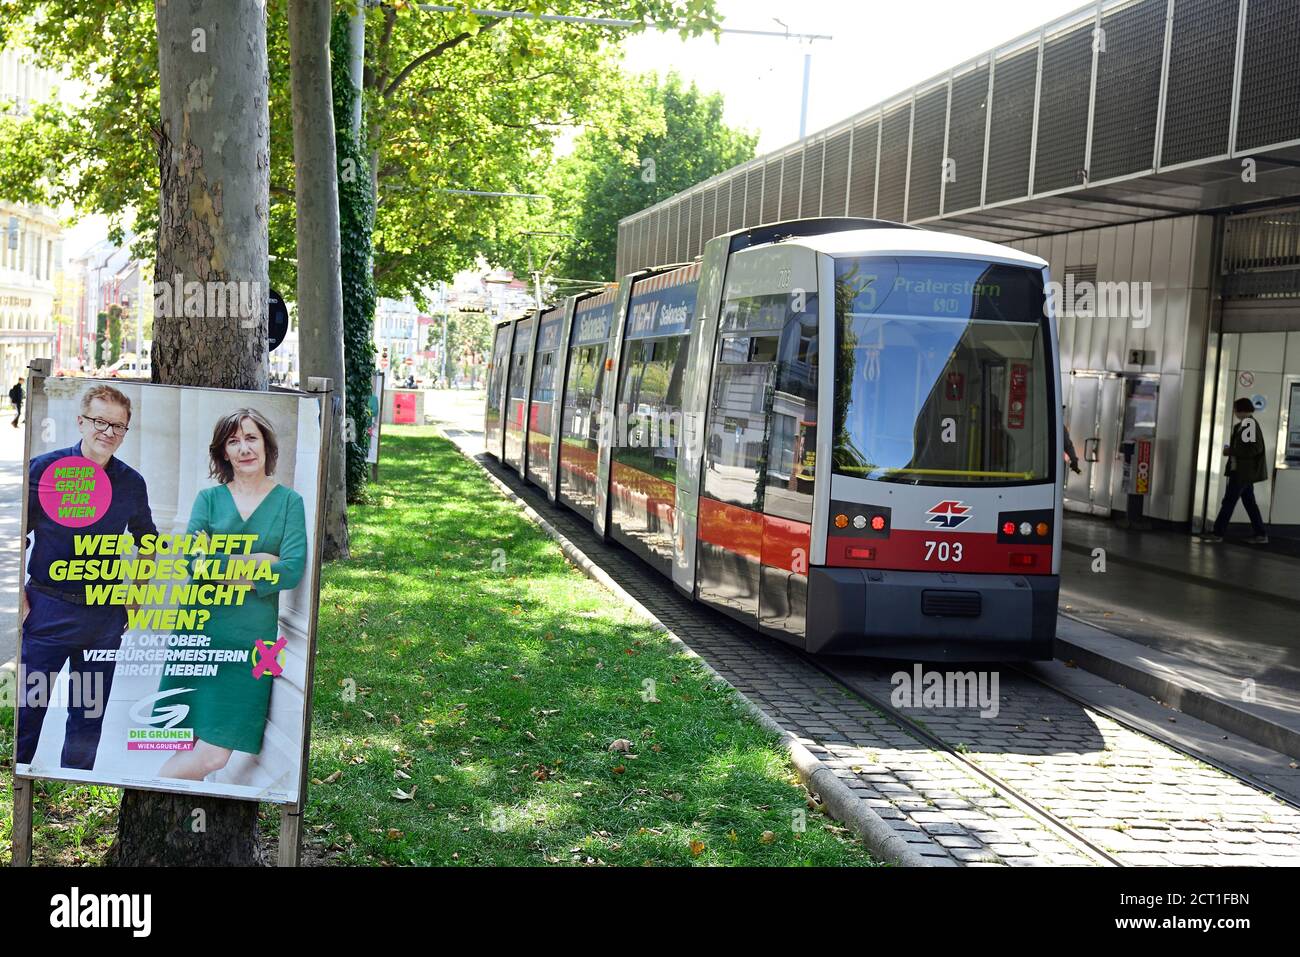 Wien, Österreich. Wahlplakate des Grünen Wiens für die Bürgermeisterwahlen am 11. Oktober 2020 in Wien. Inschrift „Wer sollte ein gesundes Klima haben, wenn nicht Wien“. Stockfoto